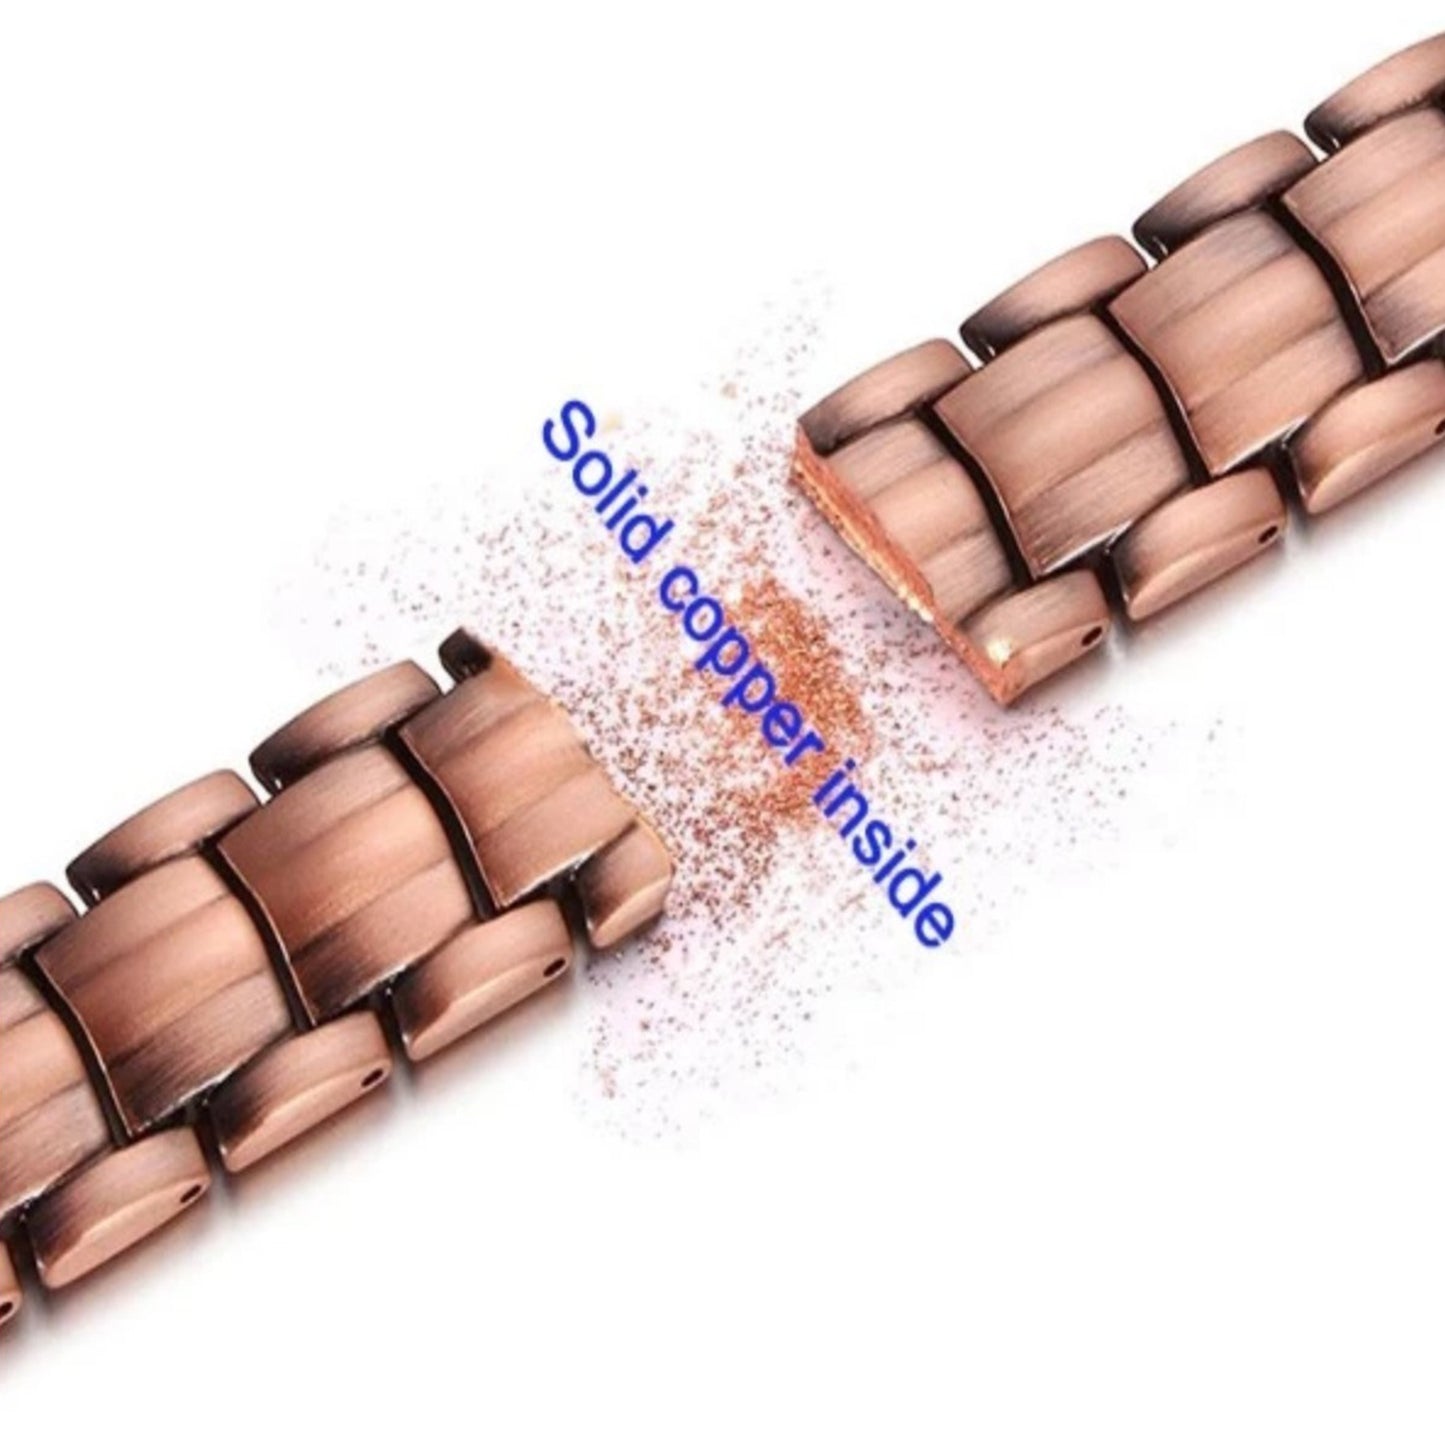 CLM38 100% Pure Copper Linked Magnetic ANKLET / Bracelet